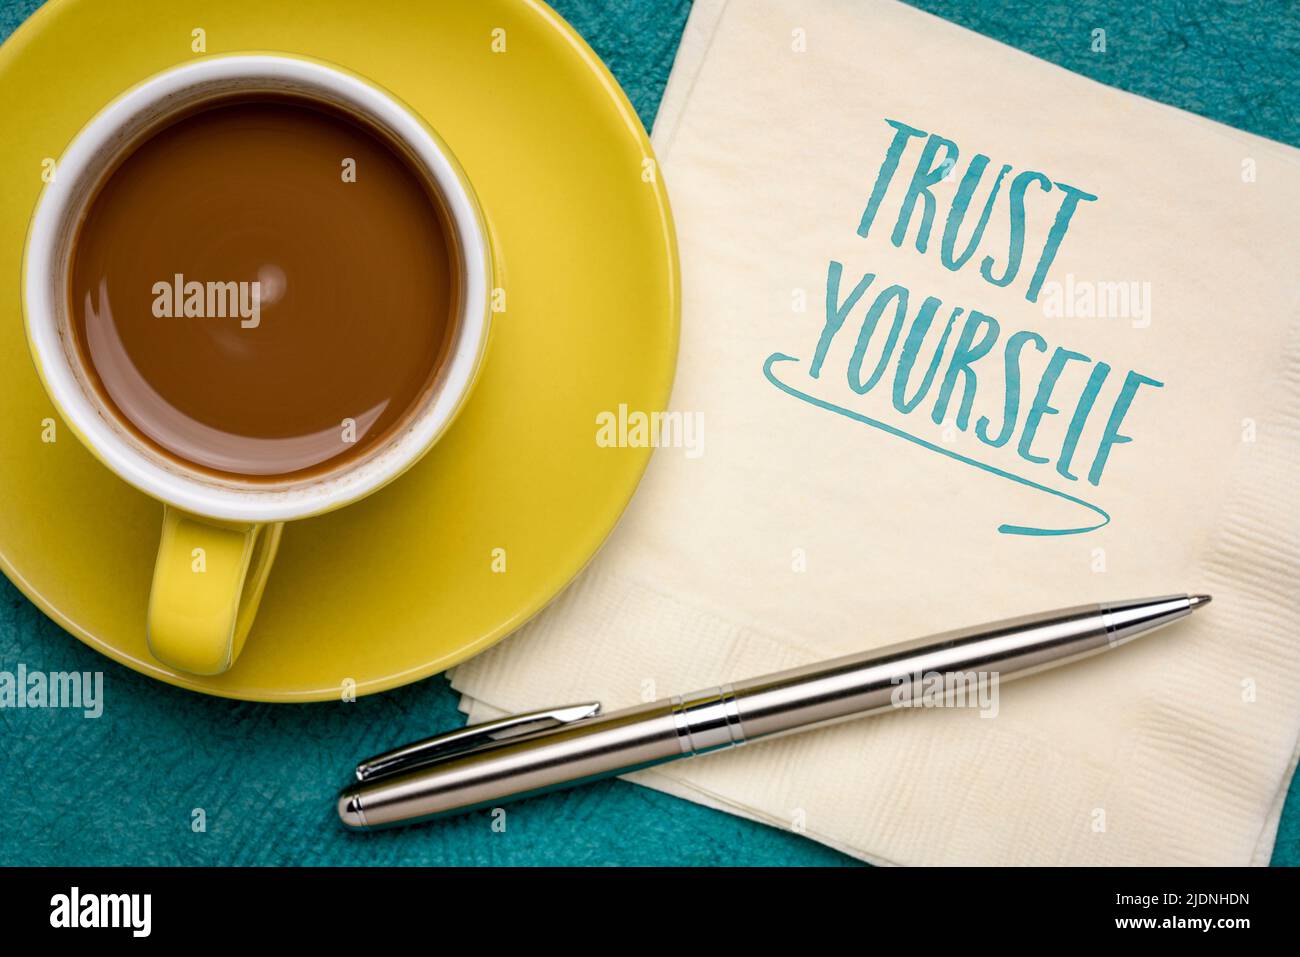 Vertrauen Sie sich selbst Erinnerungsnotiz - Handschrift auf einer Serviette mit Kaffee, Denkweise, Selbstvertrauen und persönlichem Entwicklungskonzept Stockfoto